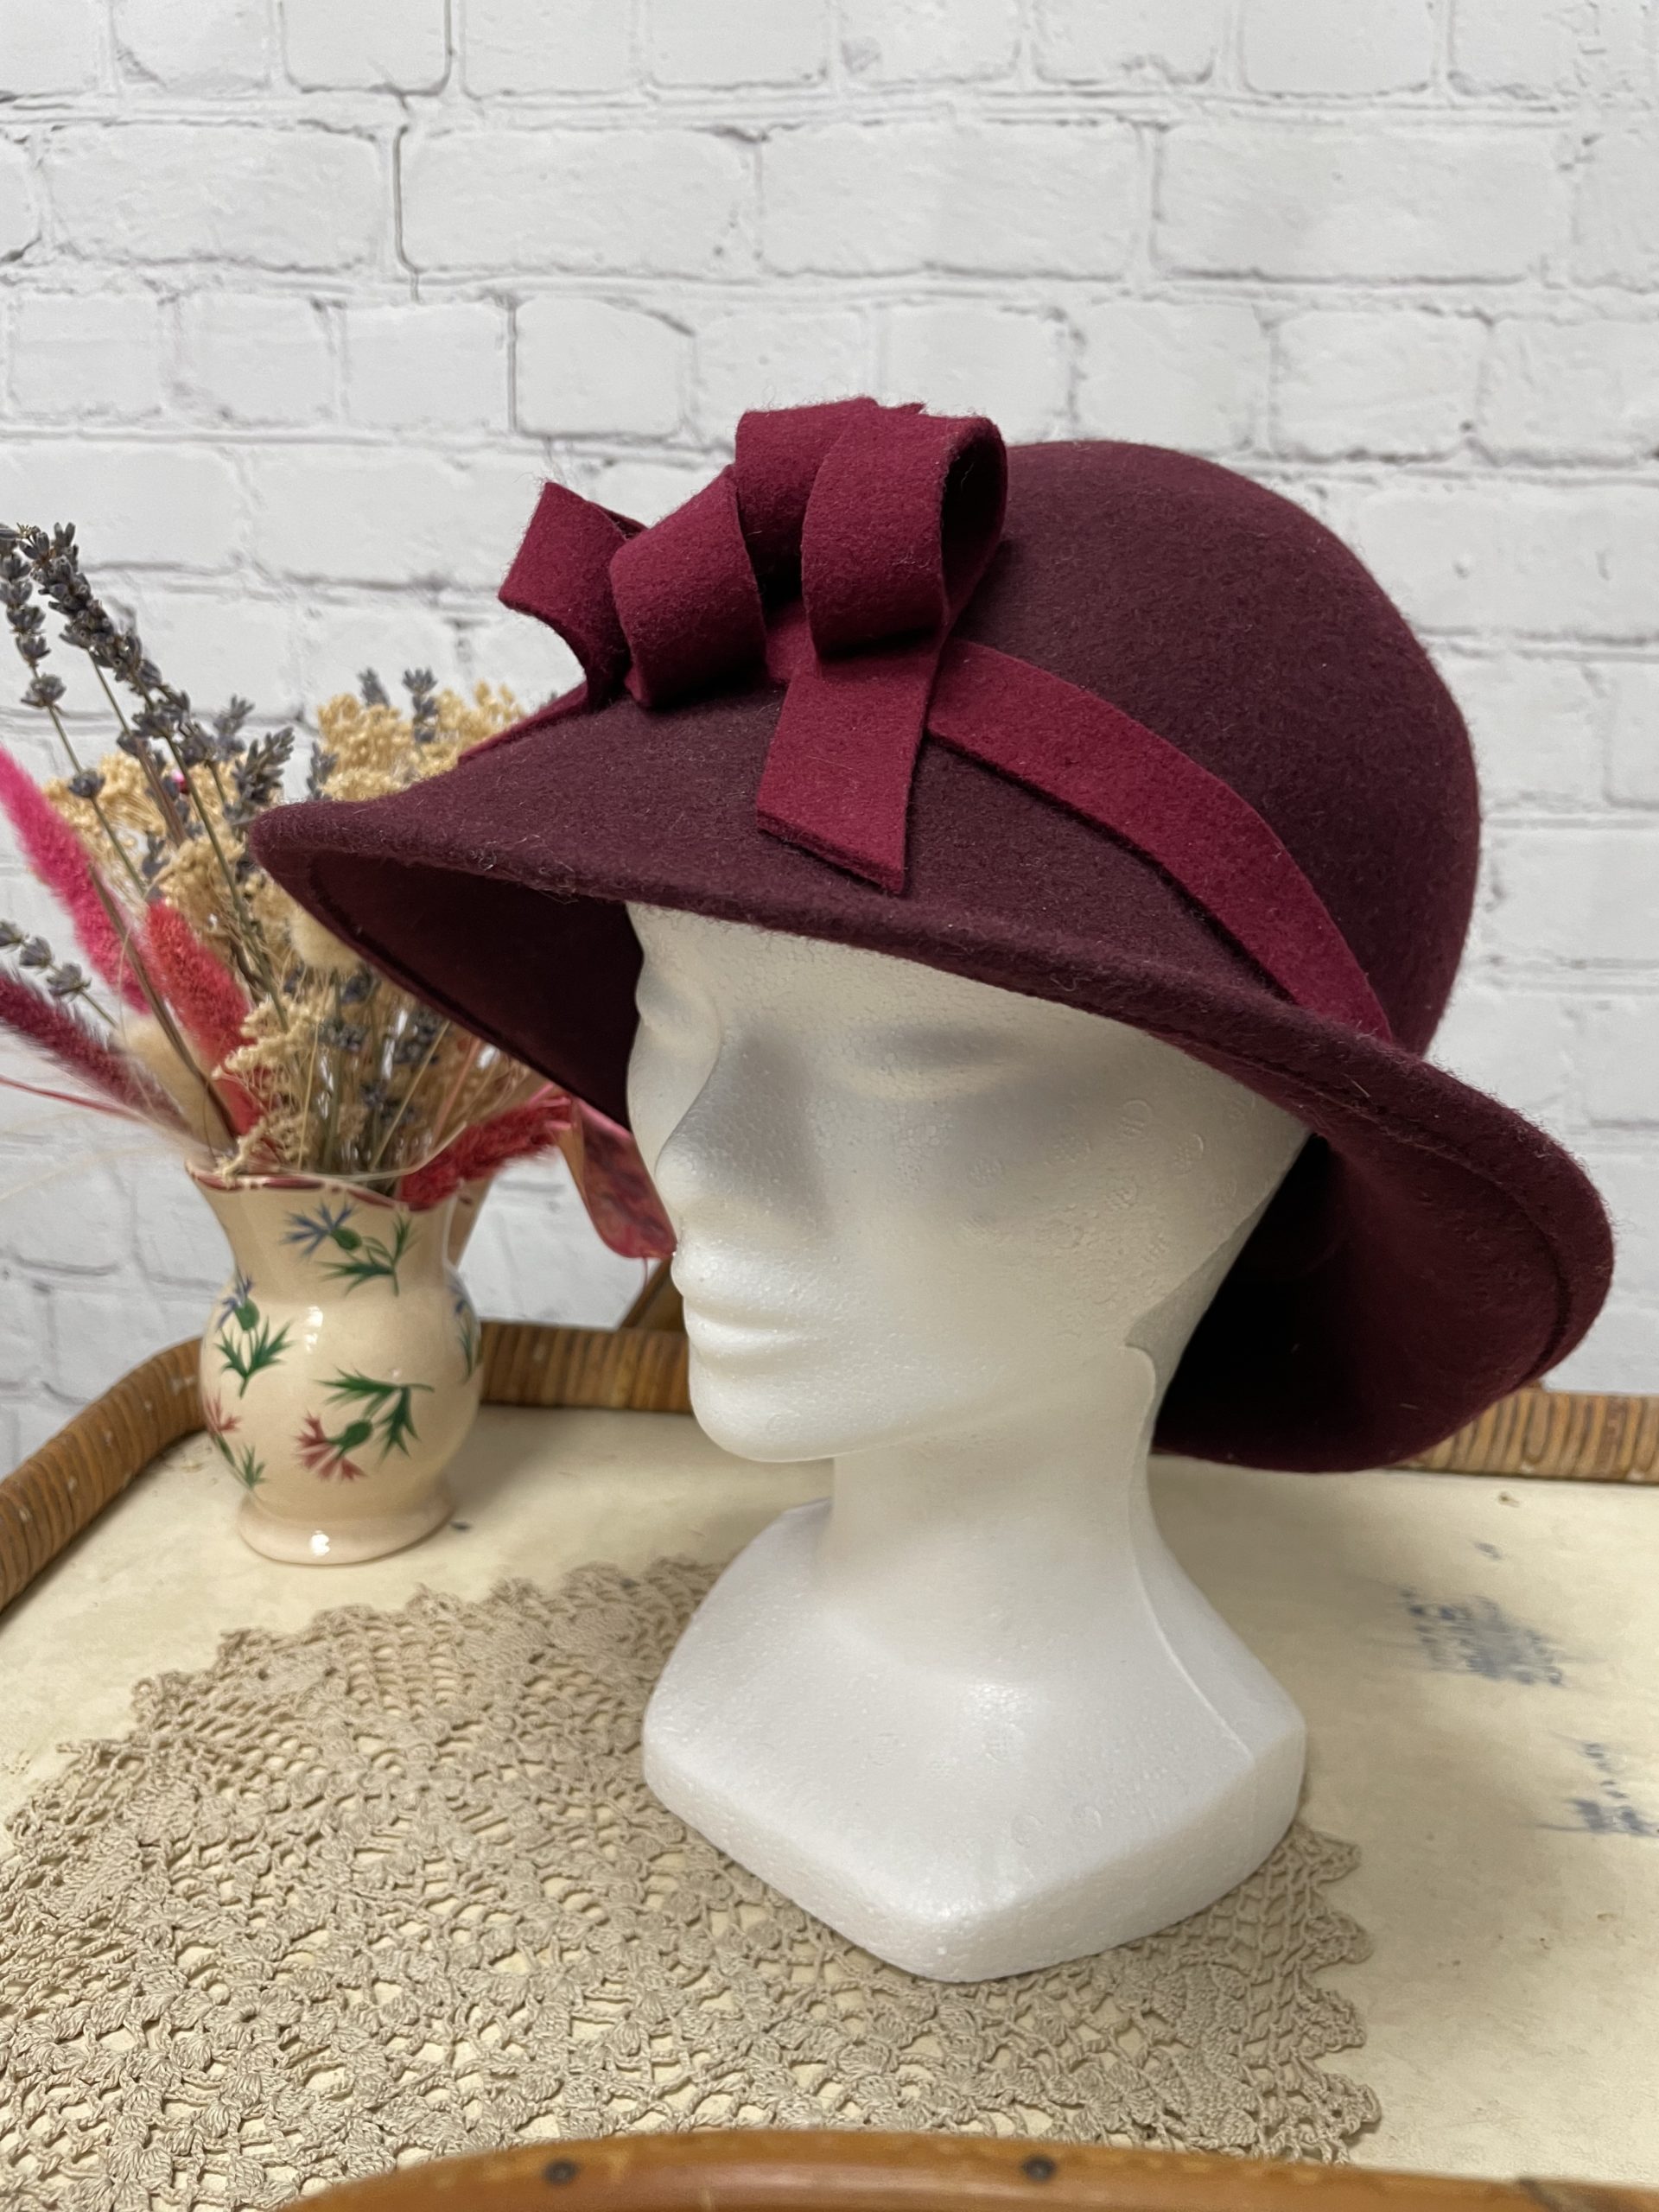 Large choix de chapeaux pour femme en feutre de laine. Taille réglable pour  s'ajuster au mieux. — Red Macchiato